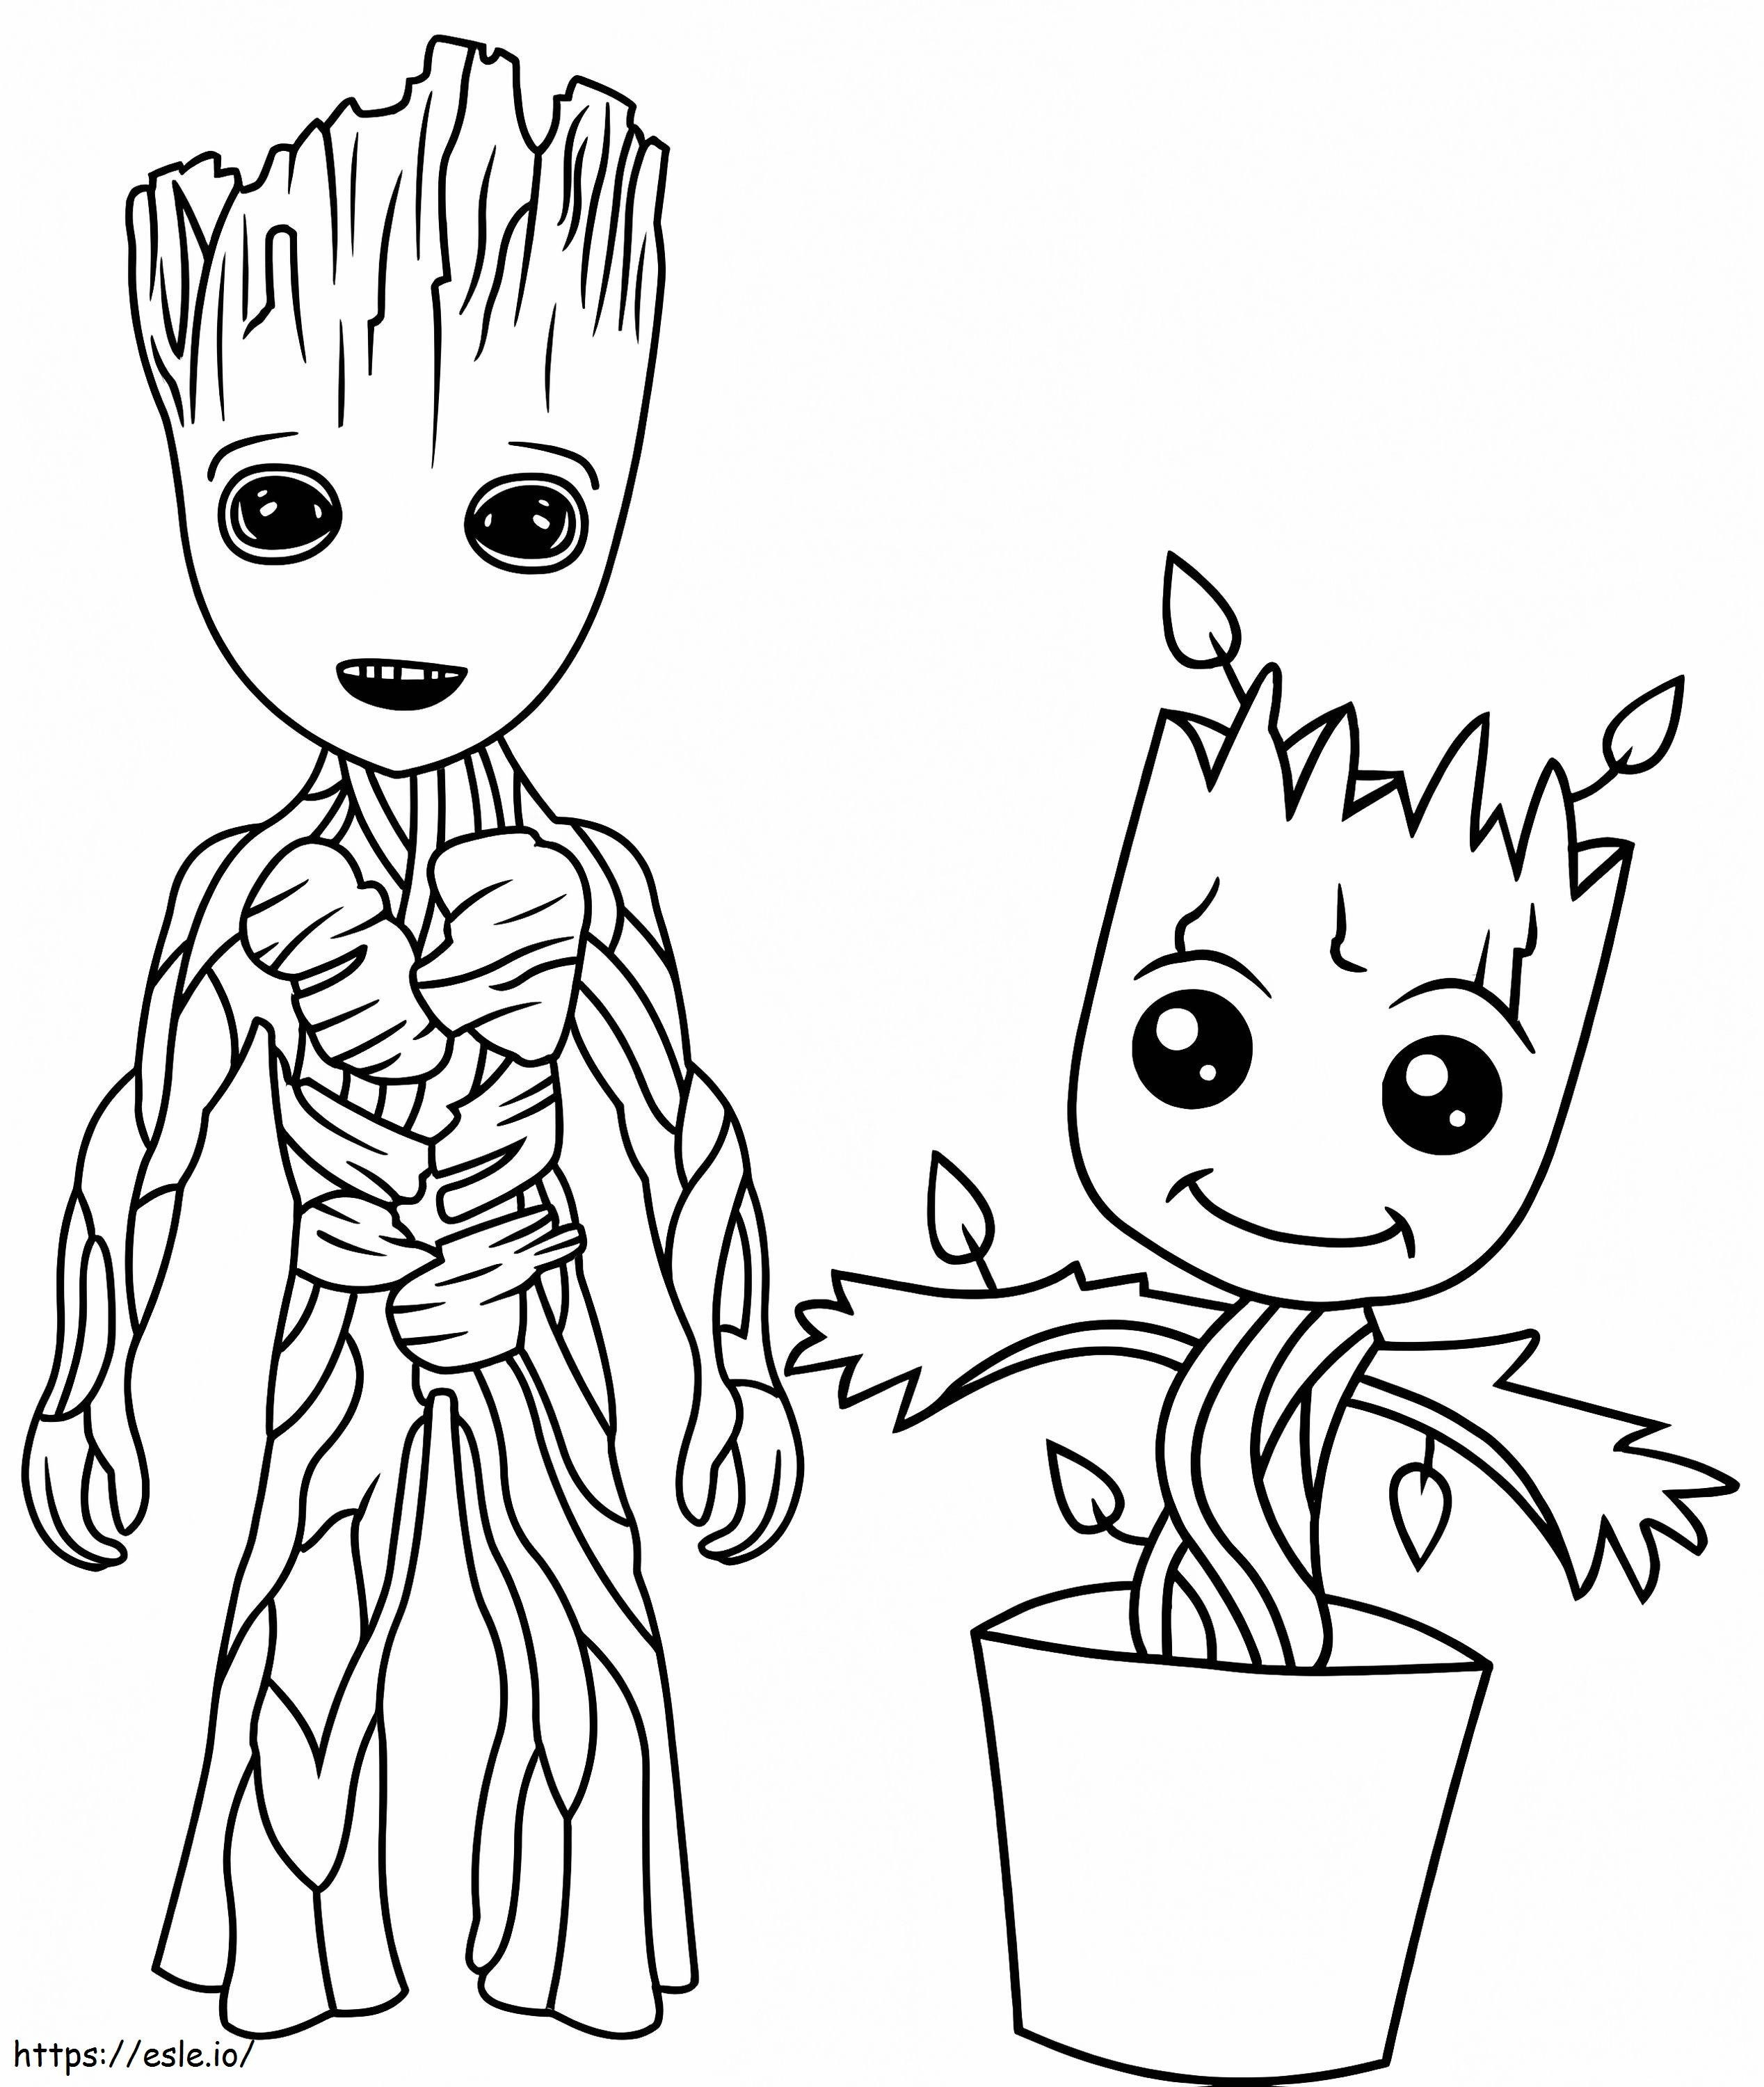 Little Groot ja Little Groot maljakossa värityskuva